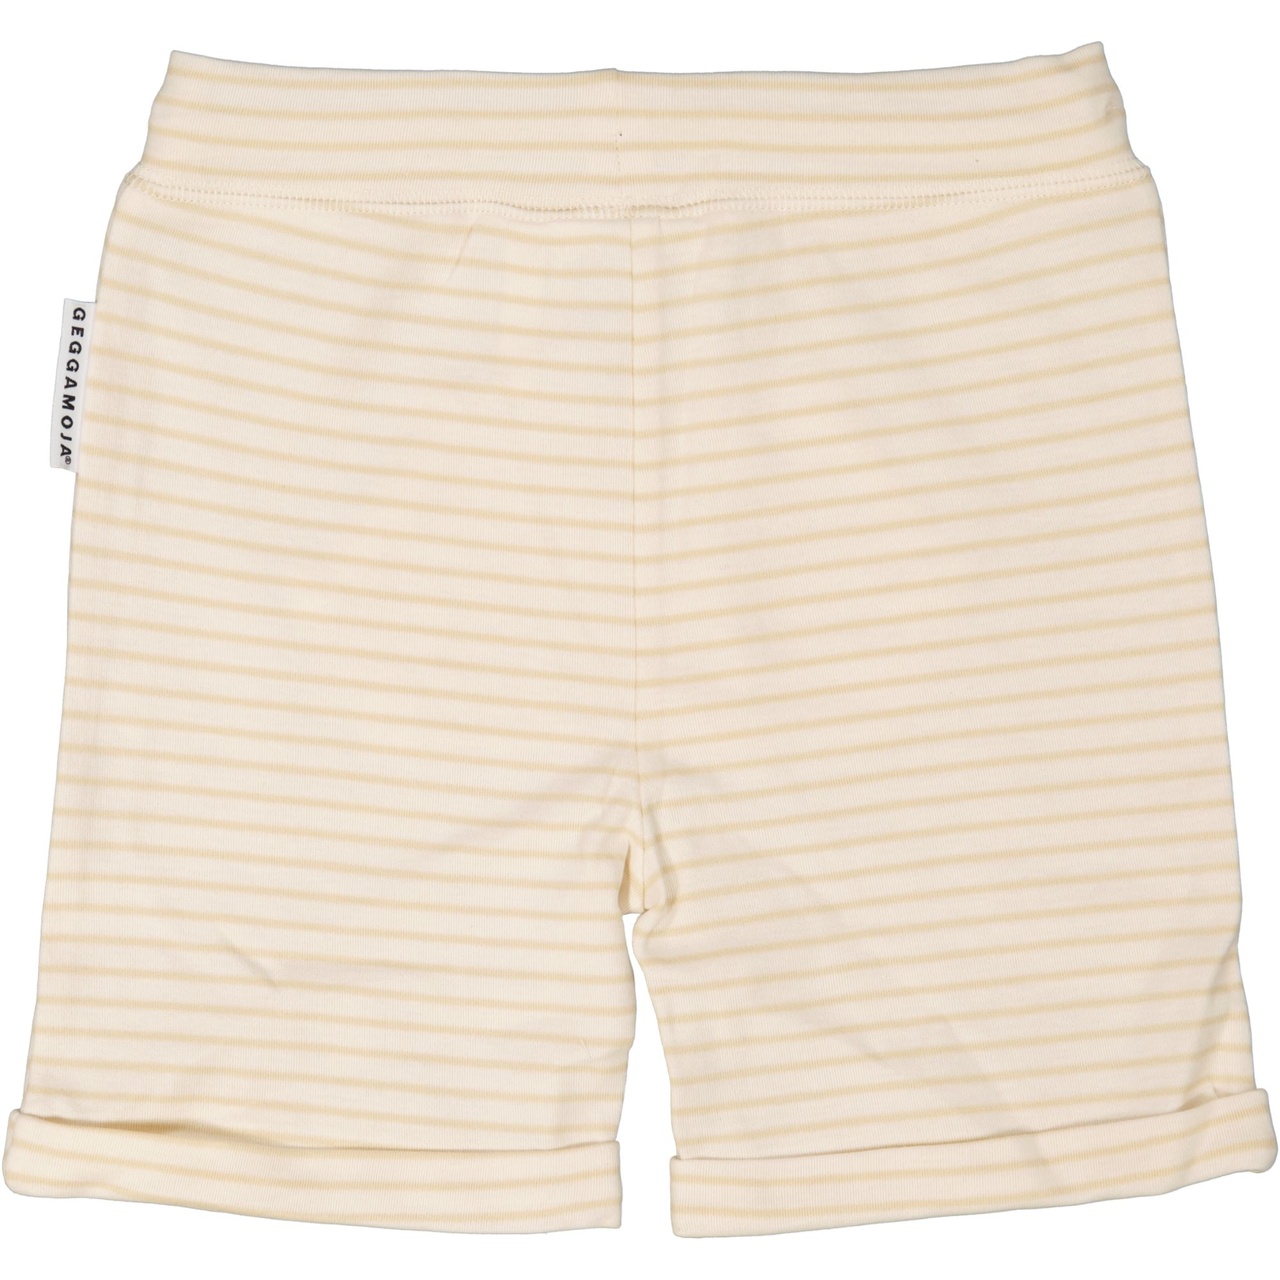 Shorts White/beige  86/92